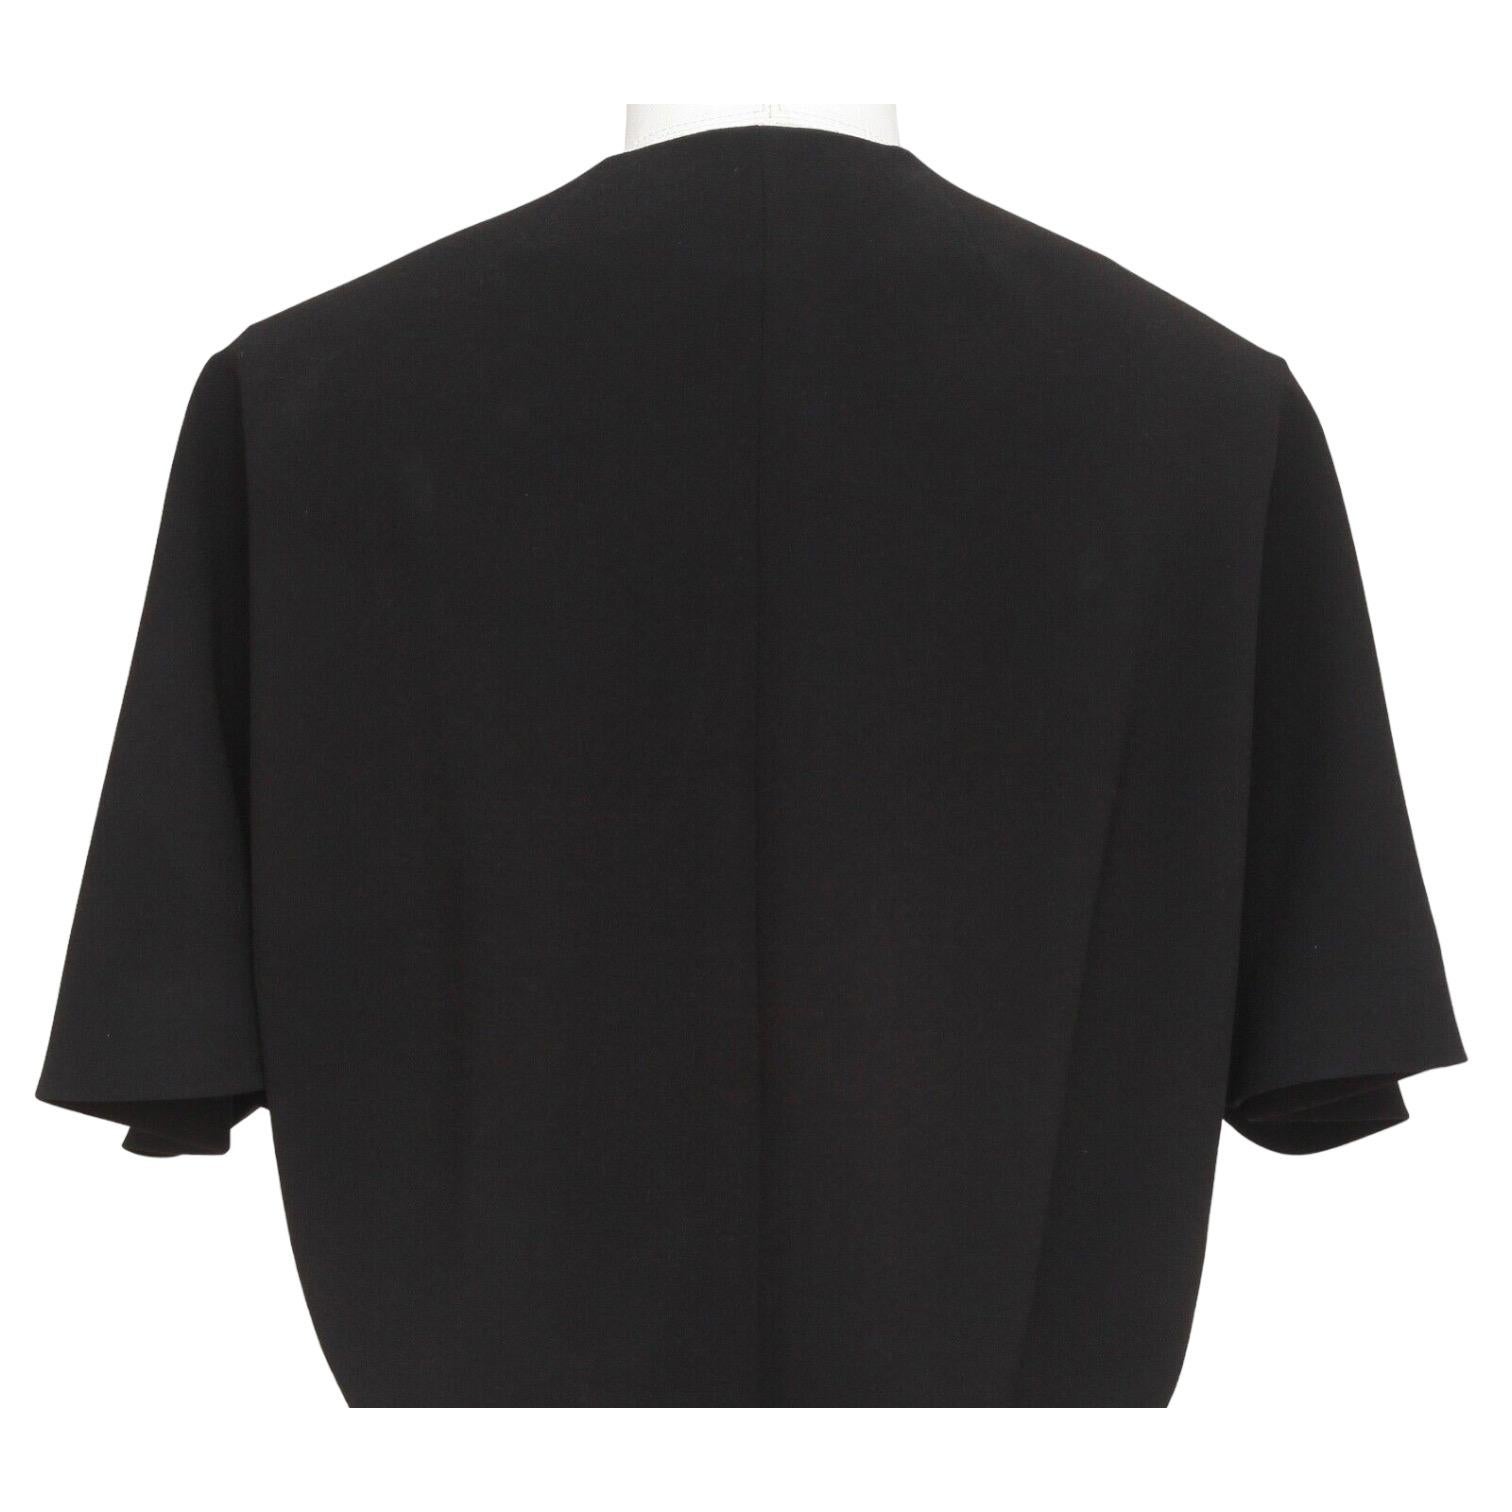 BALENCIAGA.EDITION Blouse Top Shirt BLACK Cape Sleeve Button Down Sz 36 2